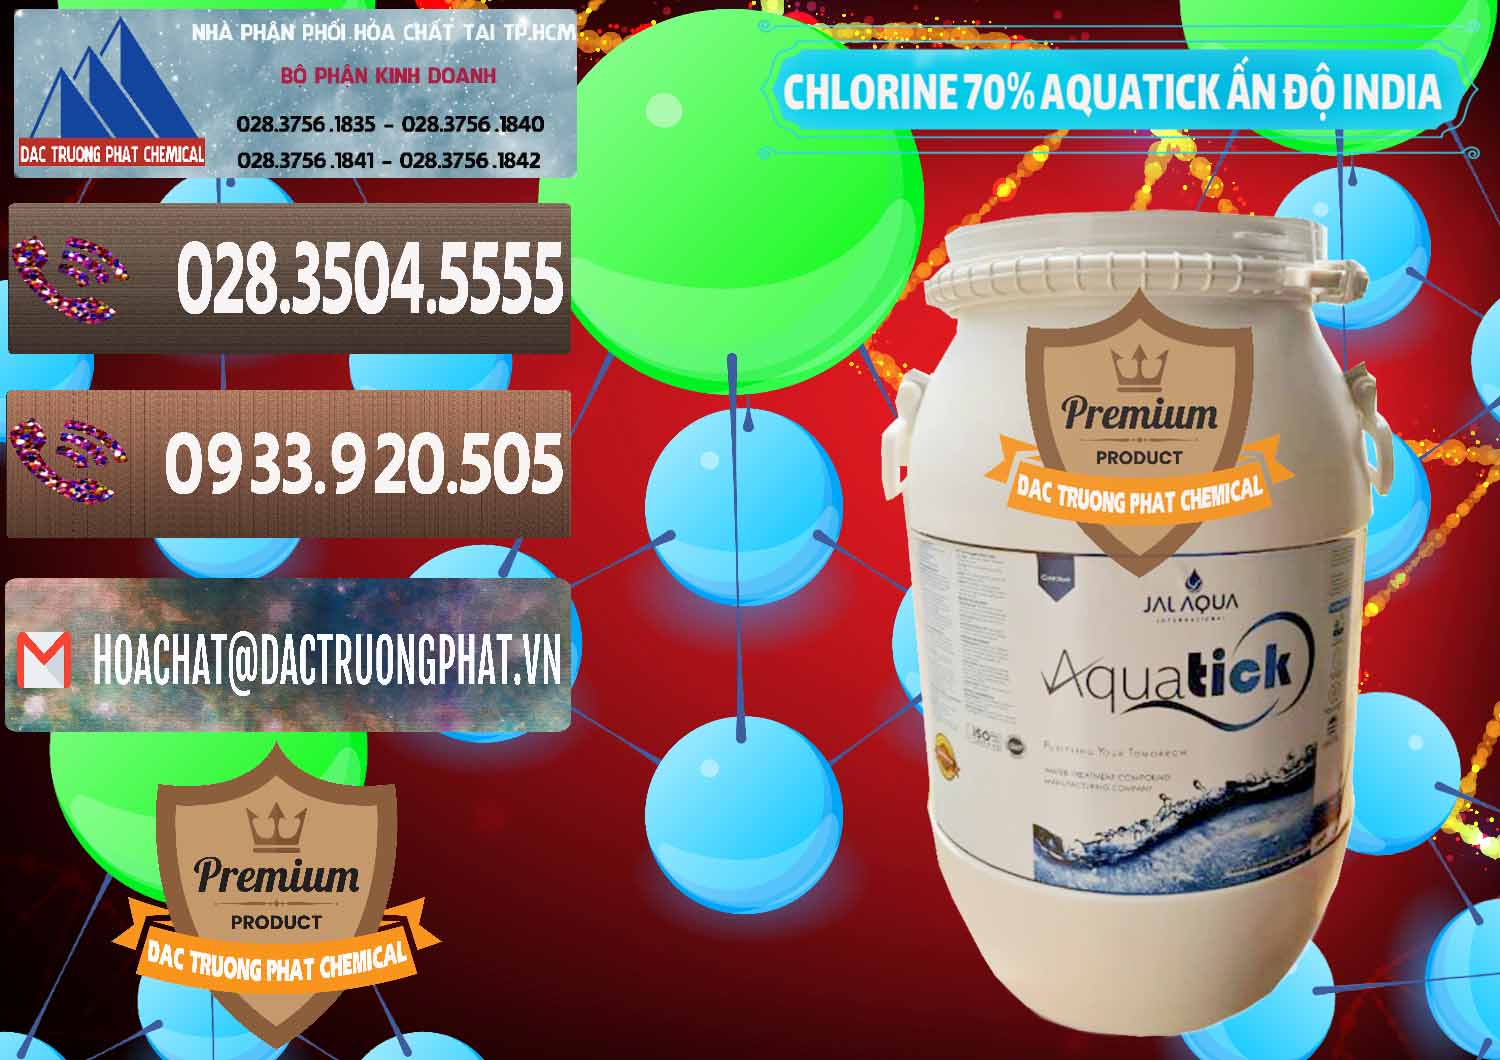 Công ty chuyên cung cấp _ bán Chlorine – Clorin 70% Aquatick Jal Aqua Ấn Độ India - 0215 - Cty chuyên phân phối & kinh doanh hóa chất tại TP.HCM - hoachatviet.net